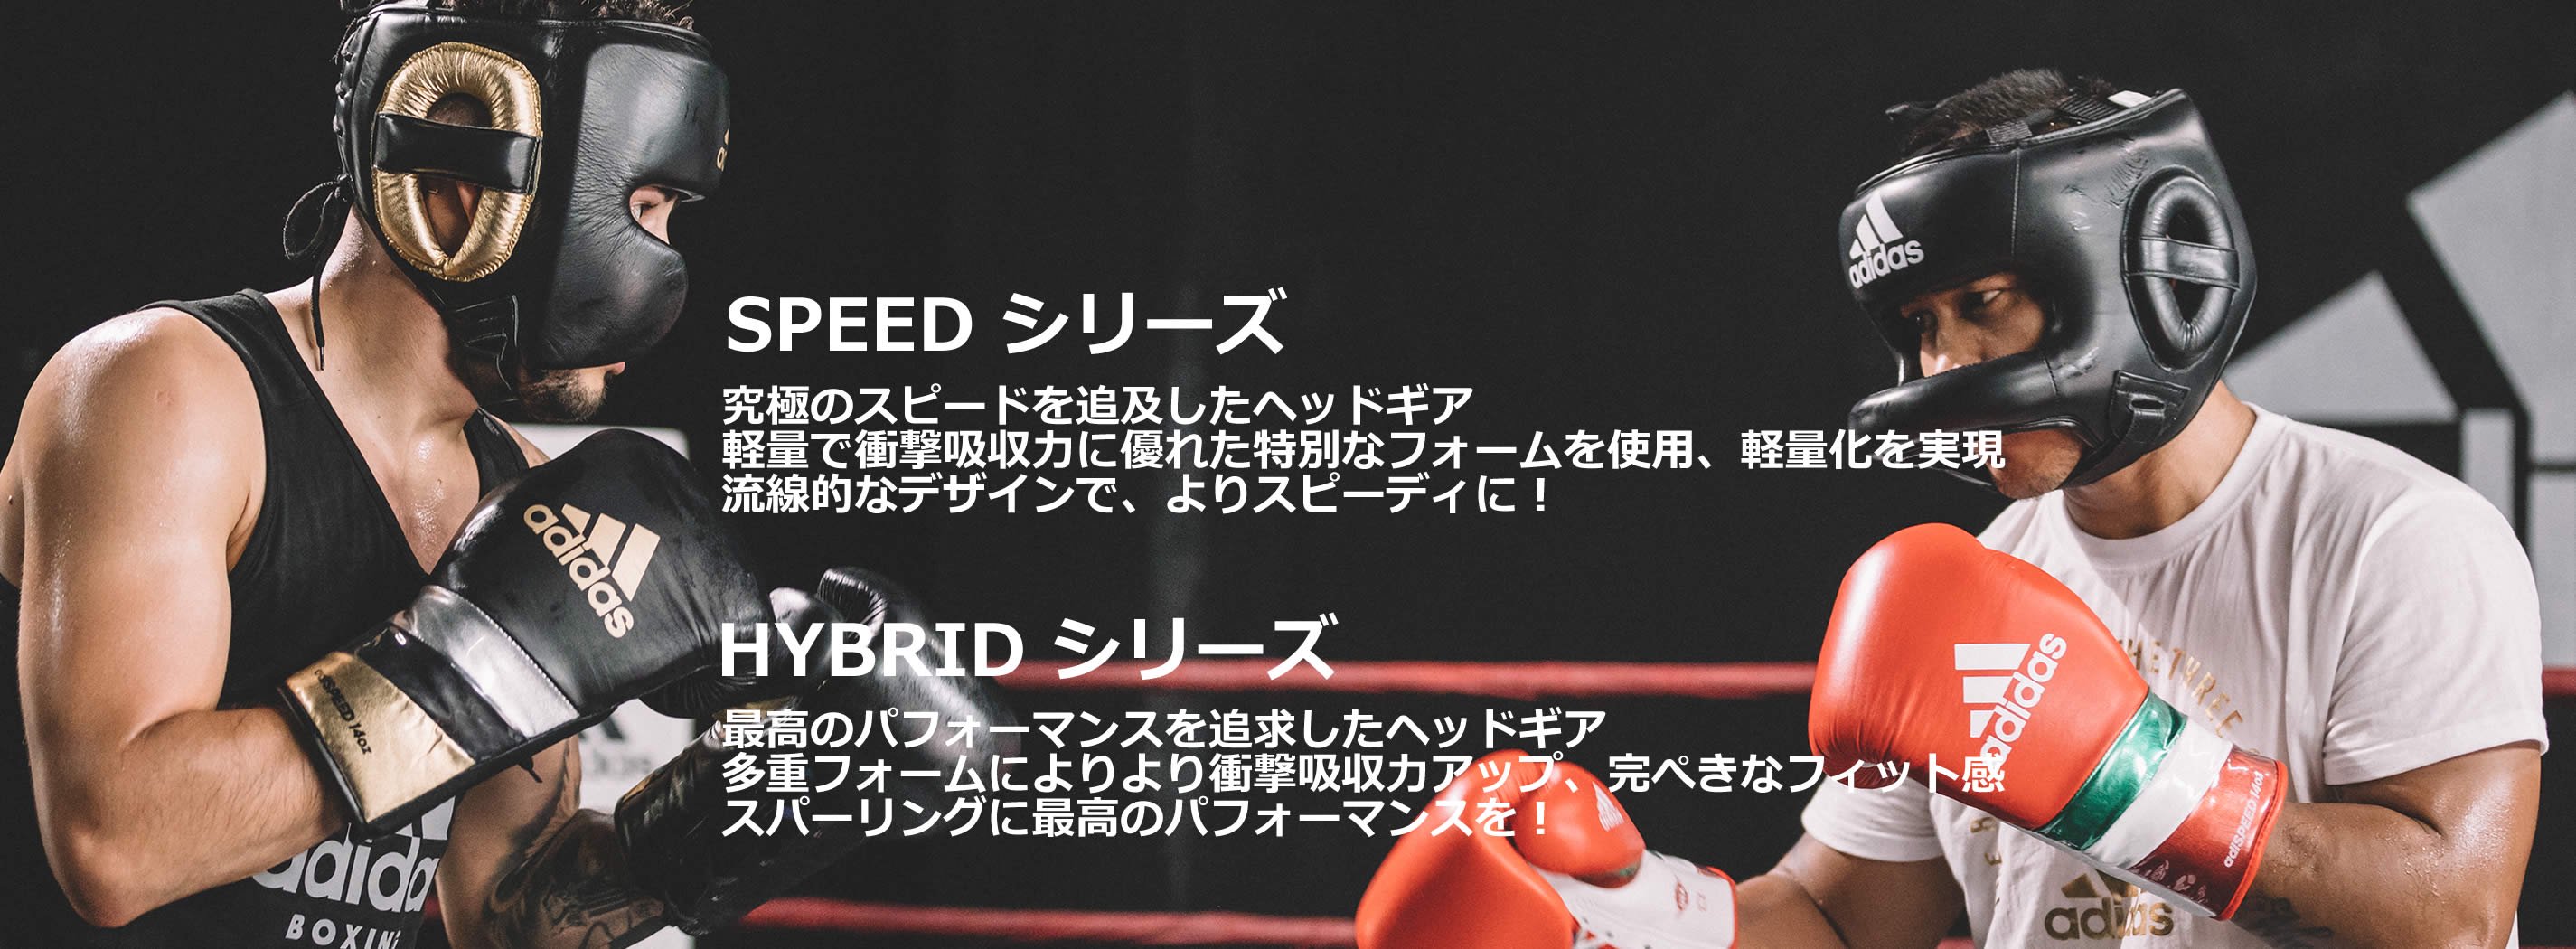 ヘッドガード - アディダス adidas 格闘技用品 ボクシング用品 空手衣 | リュウジンスポーツ